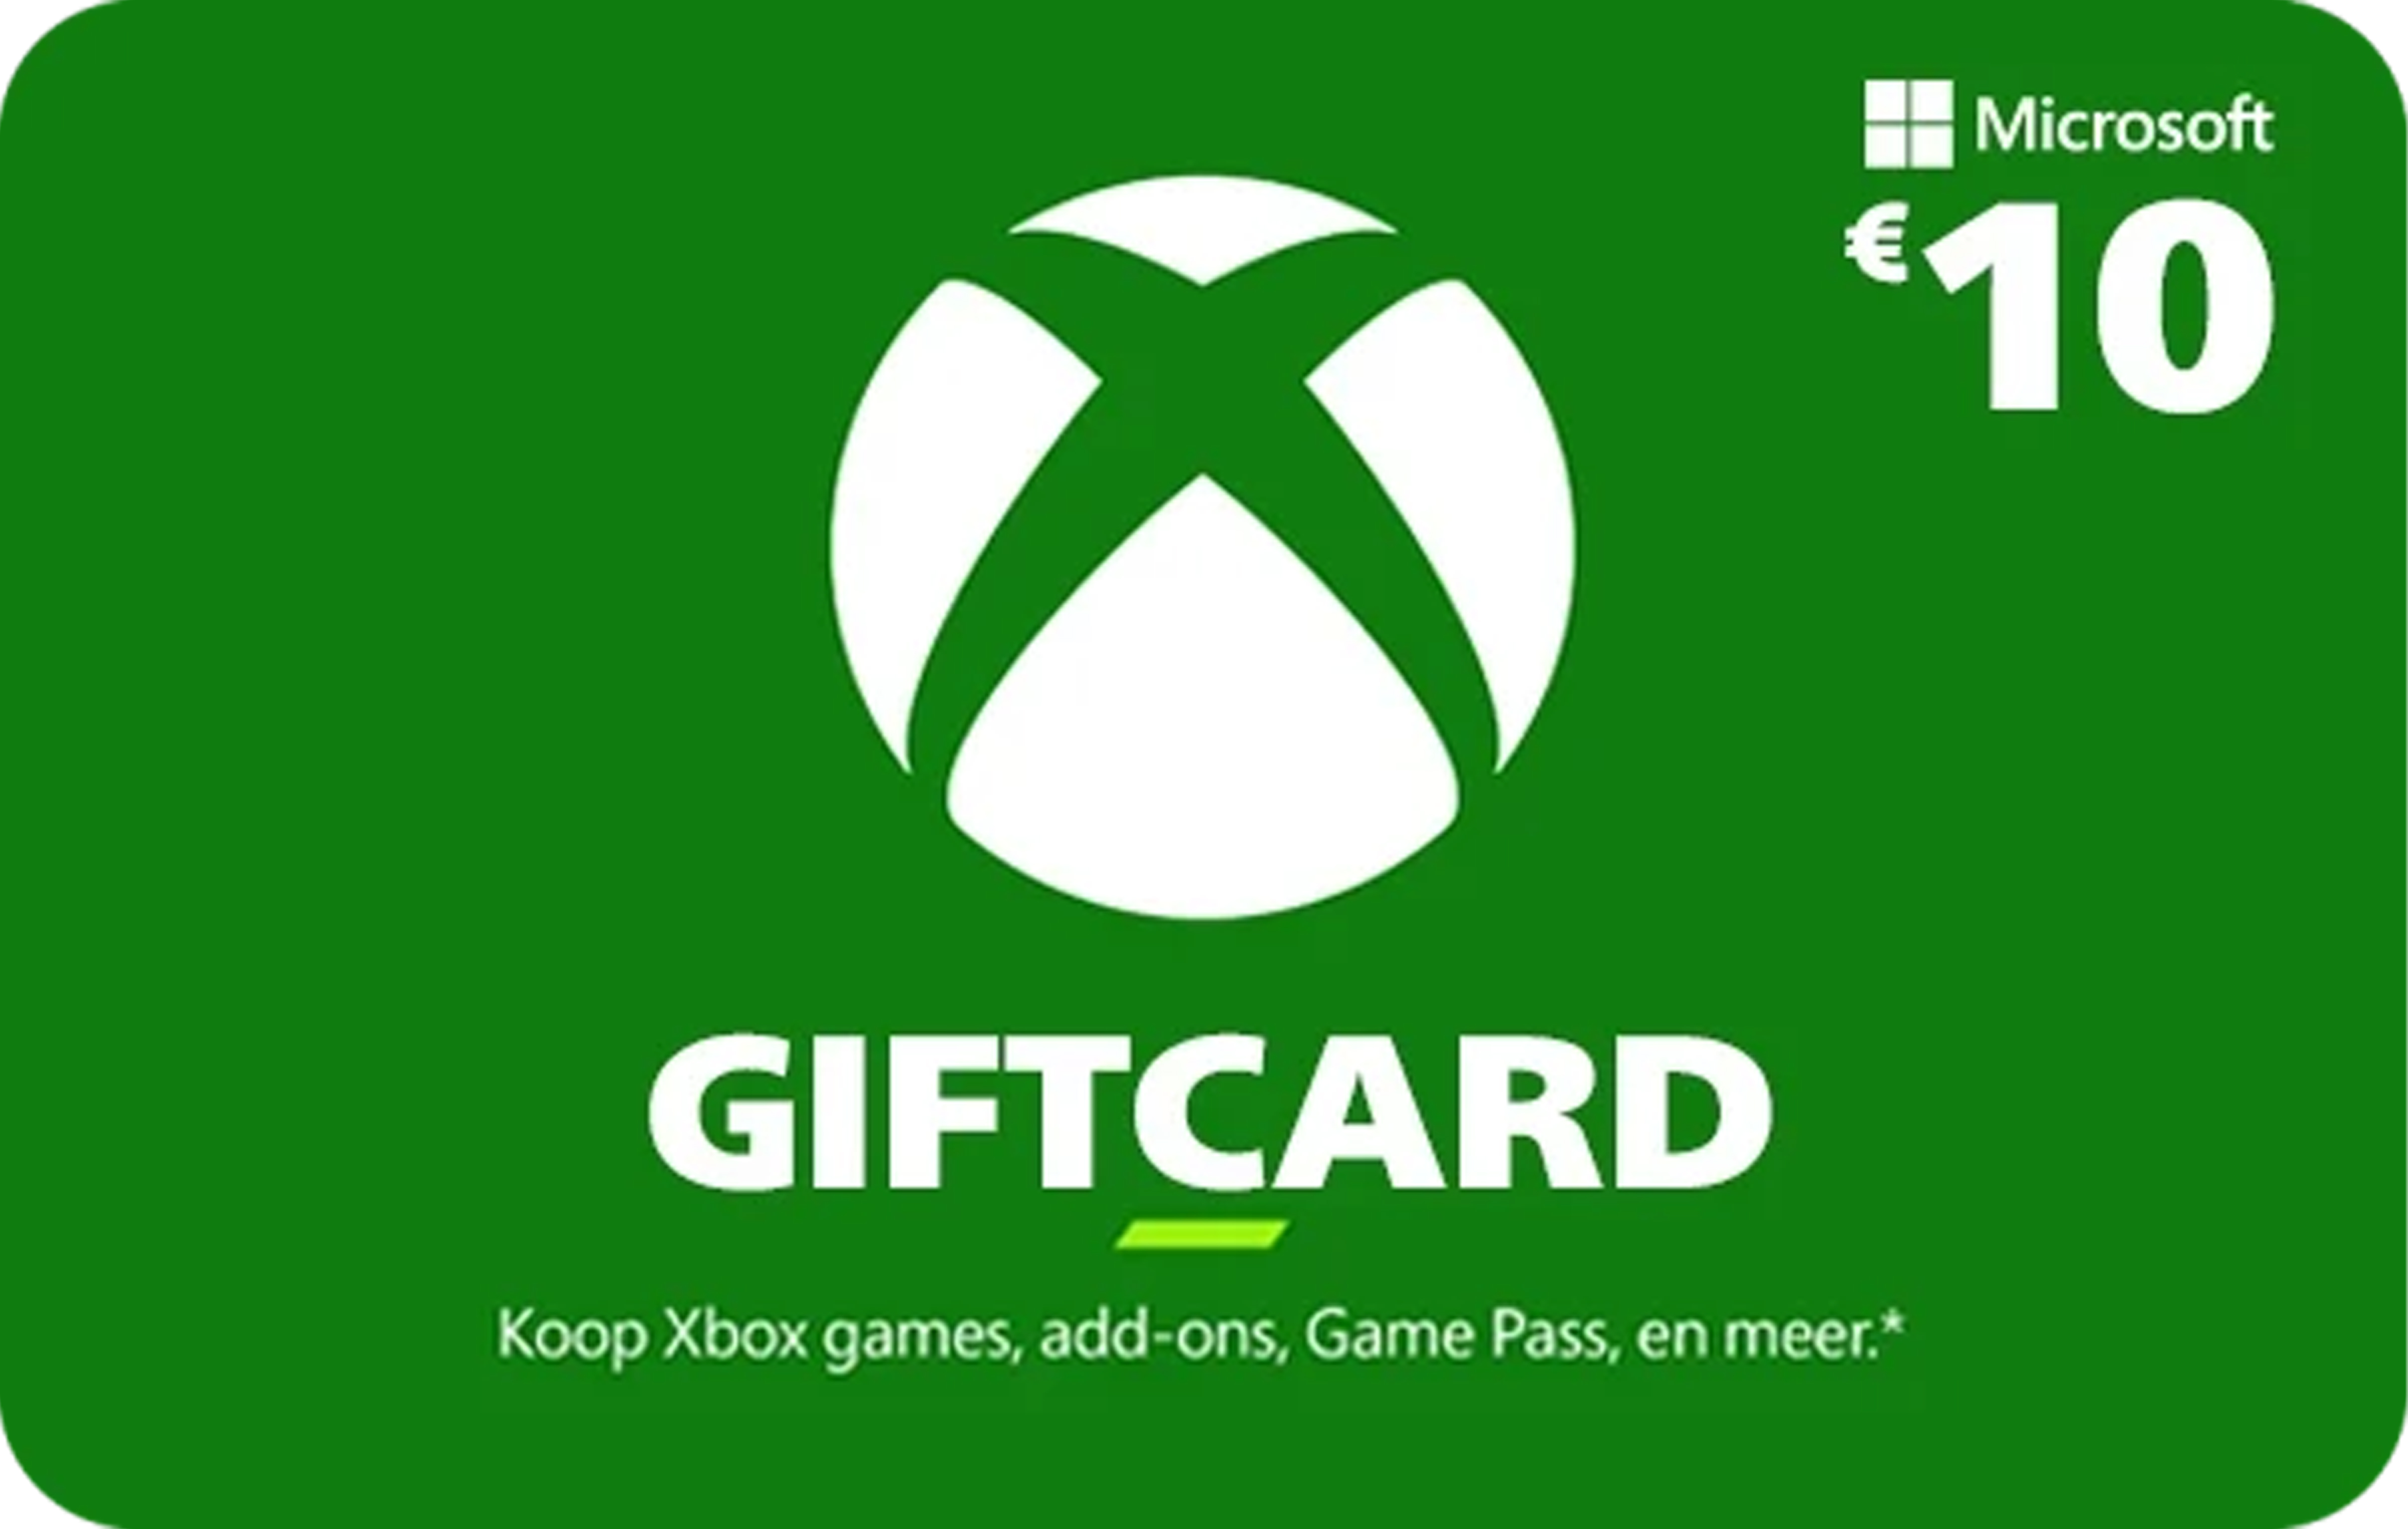 Buitenland Ga door Afgekeurd €20 Xbox Giftcard kopen | Direct geleverd | Ikwiltegoed.nl